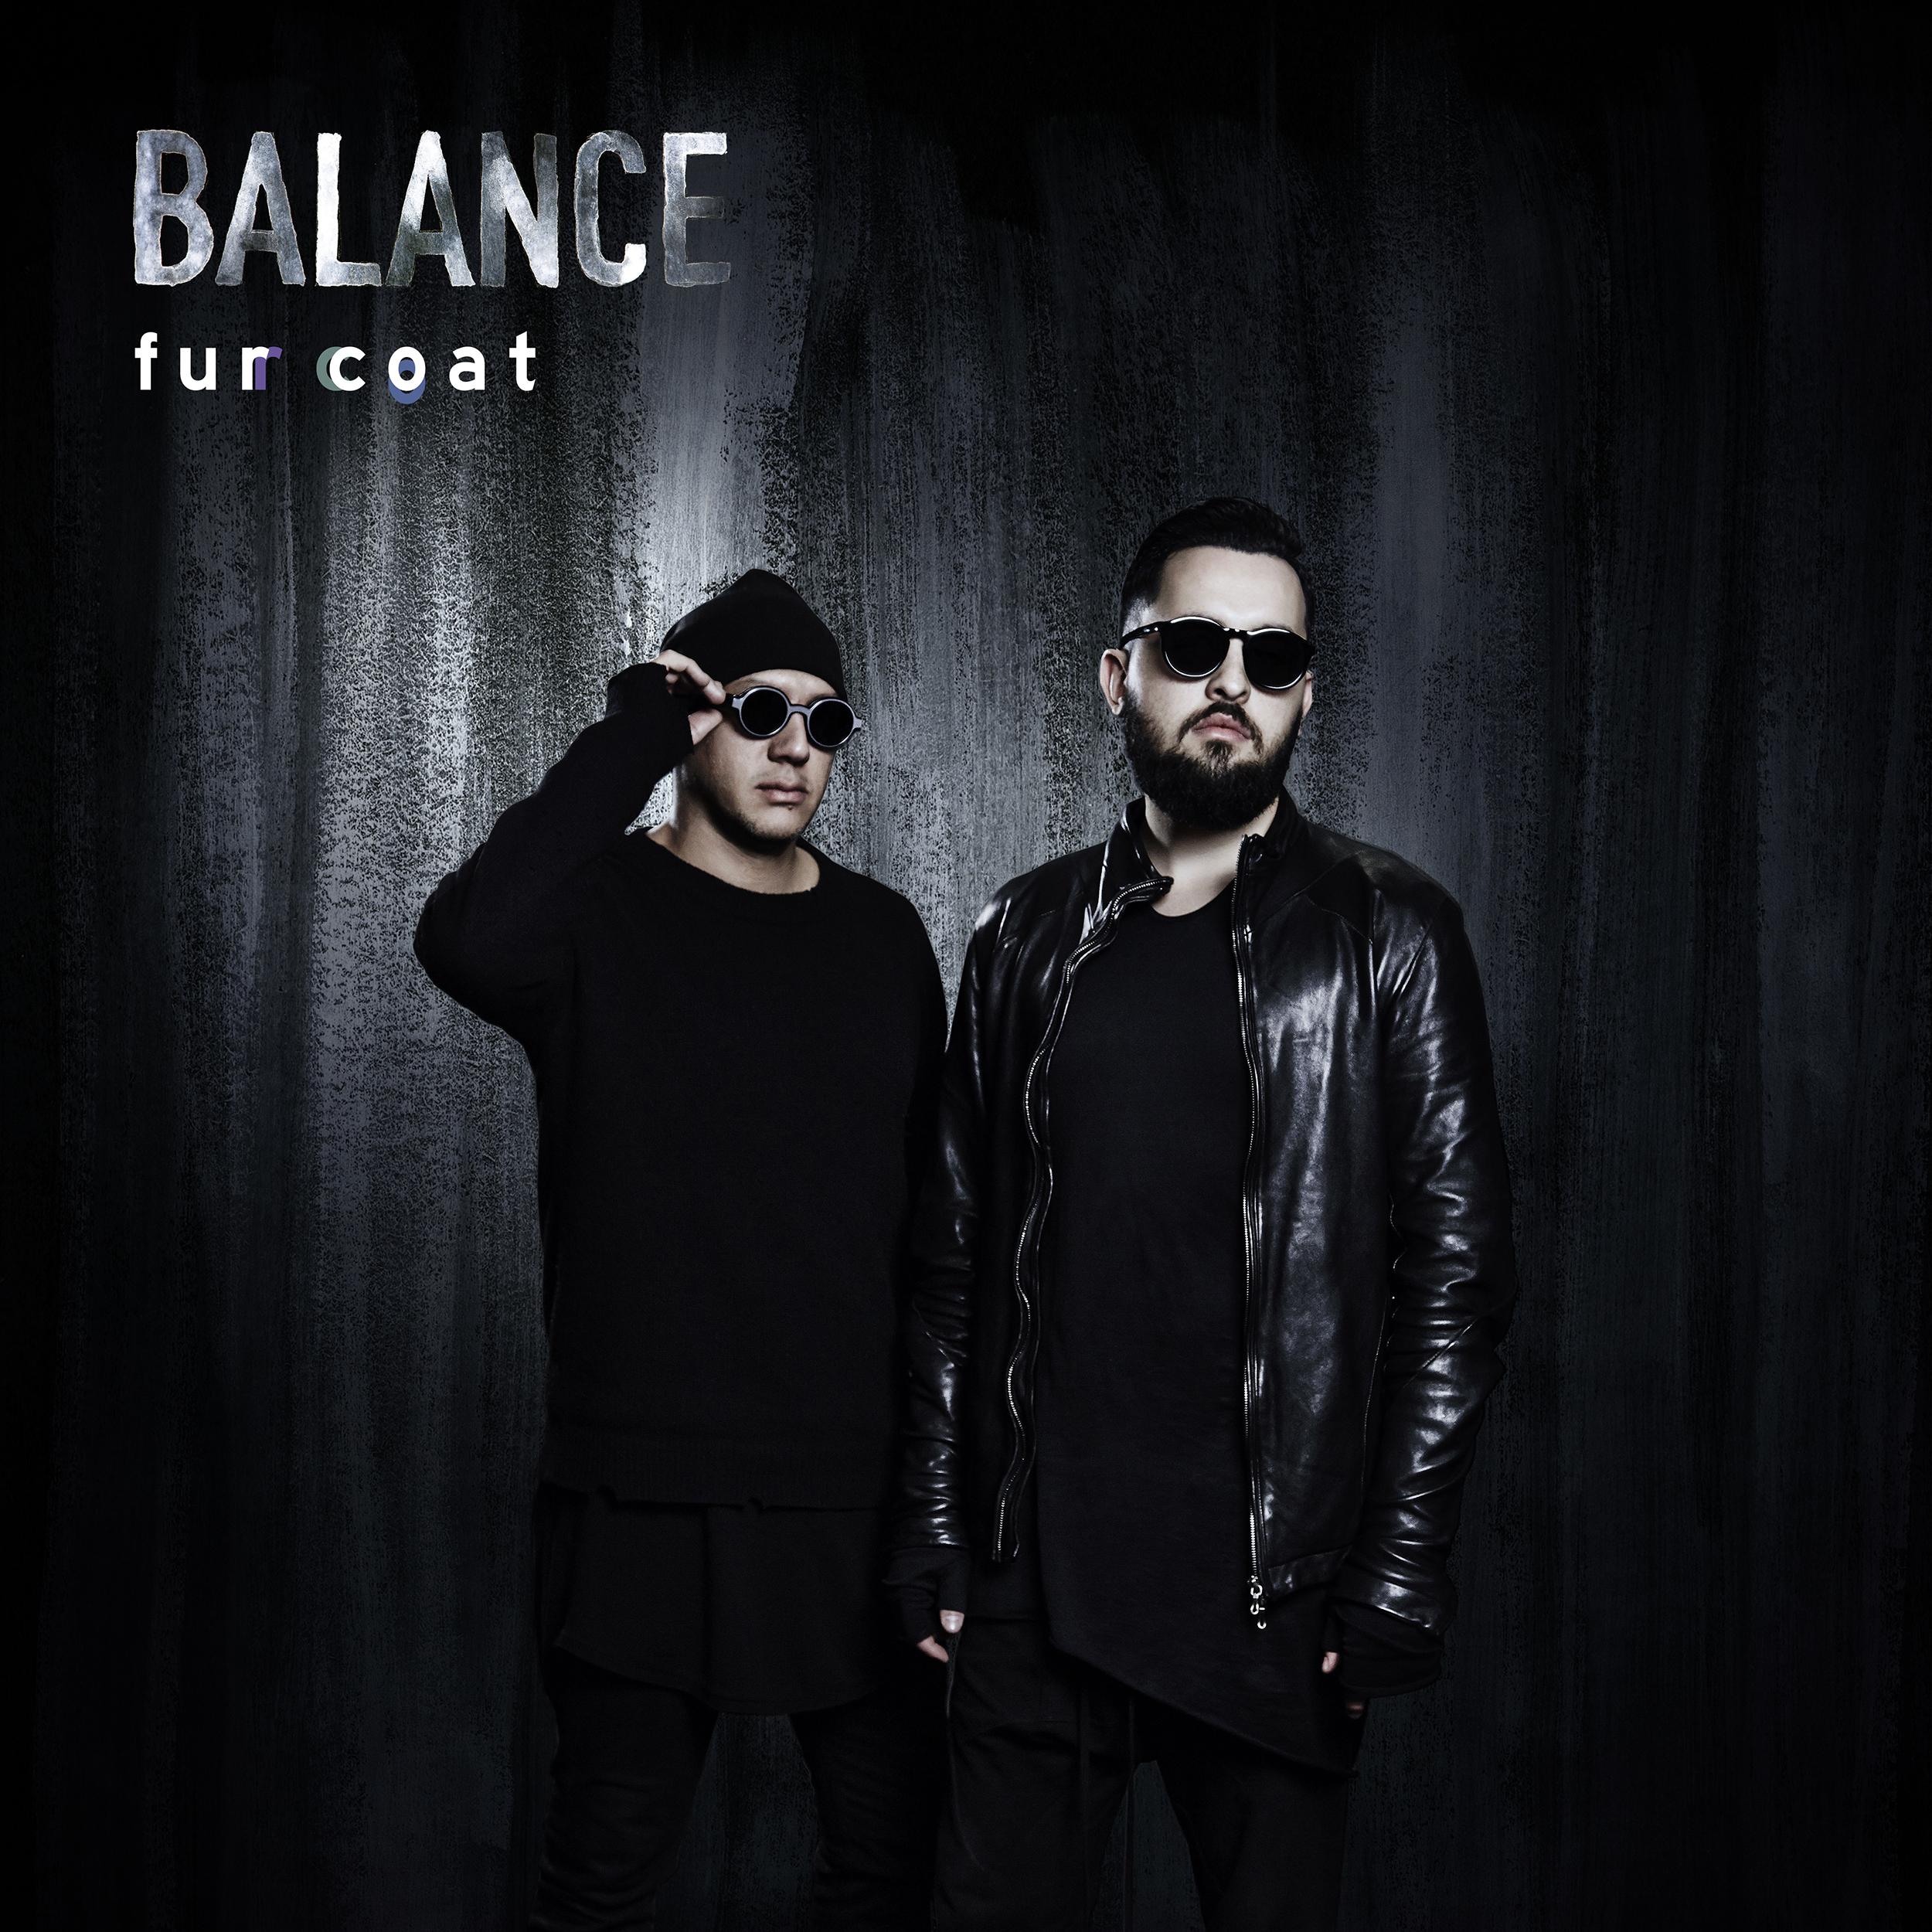 Balance presents Fur Coat (Continuous Mix)